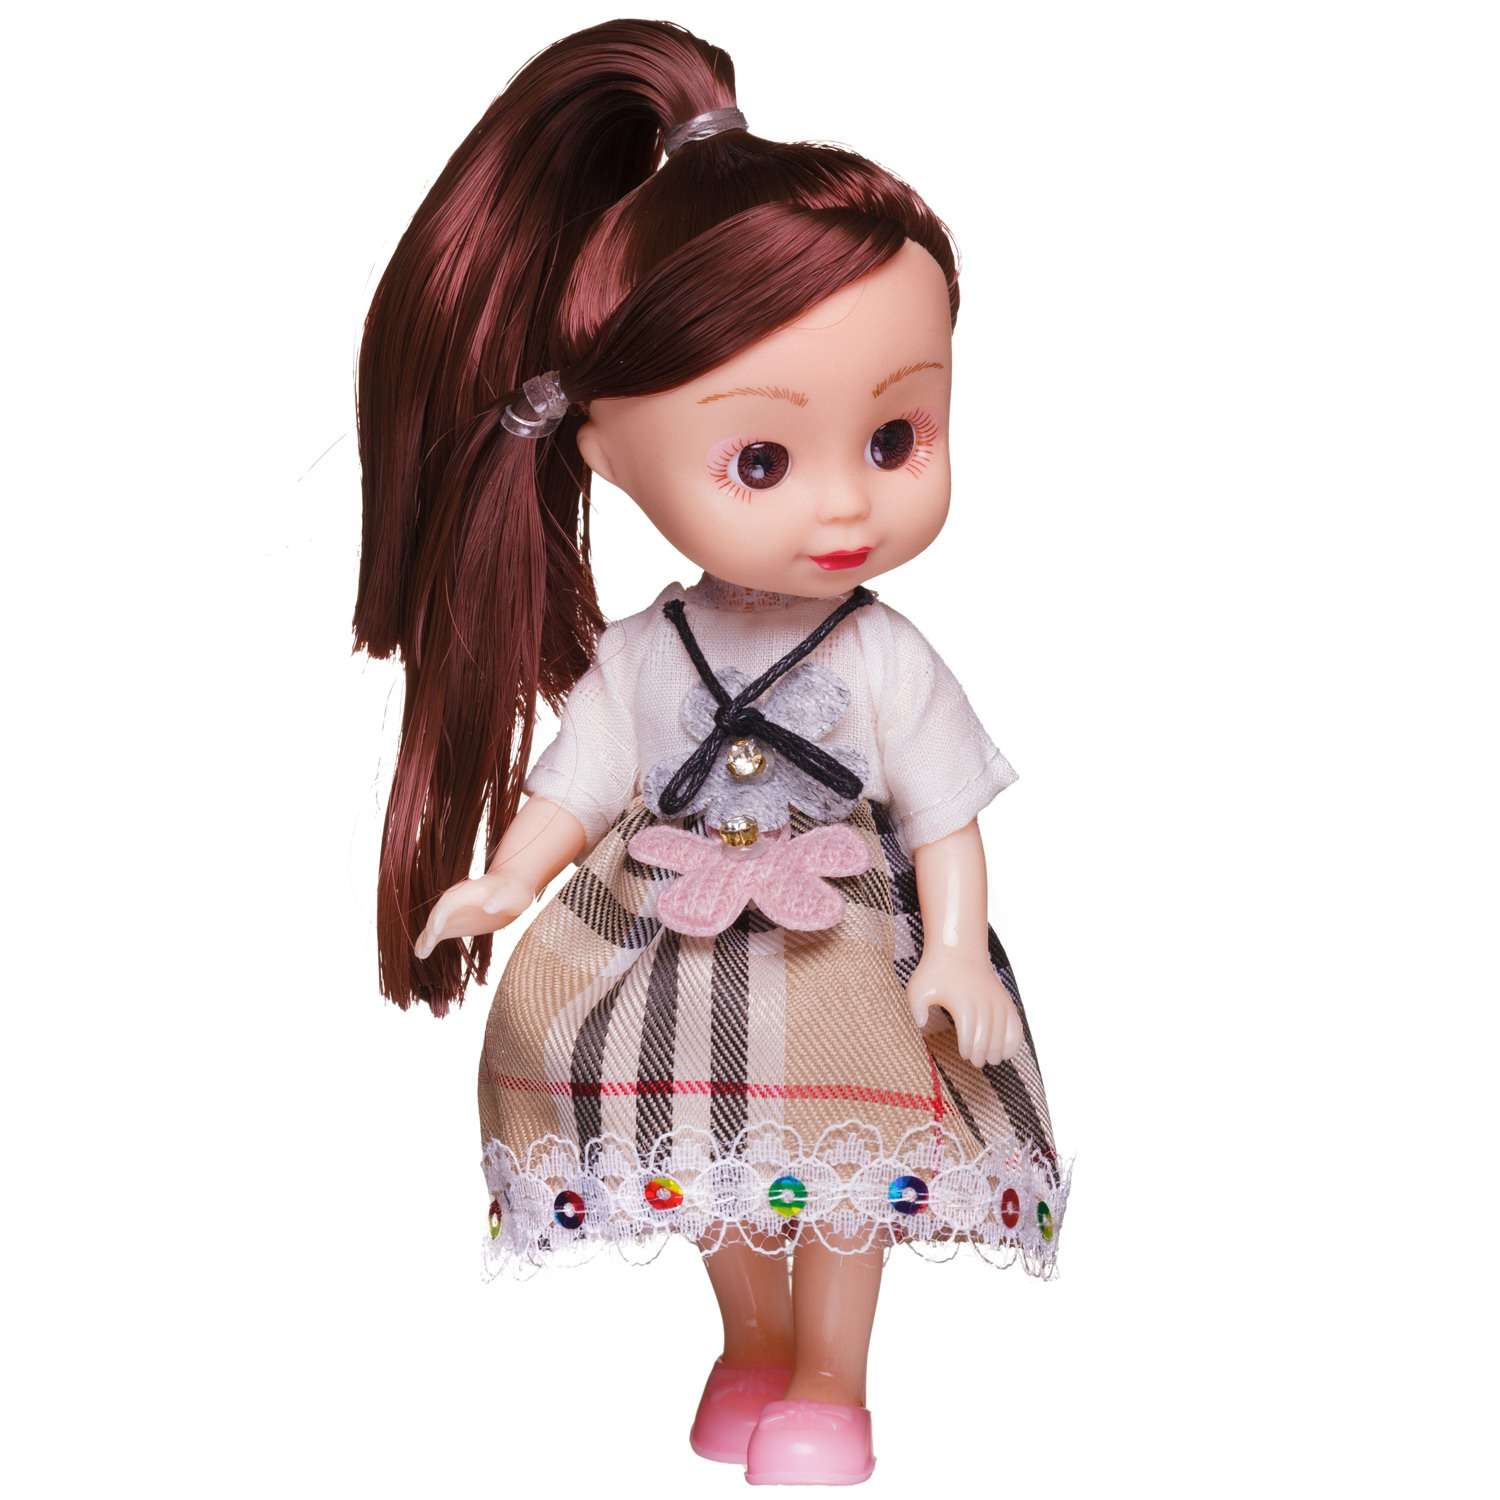 Игровой набор Junfa кукла 15 см в платье с белым верхом и юбкой шотландкой с питомцем WJ-27720 - фото 4